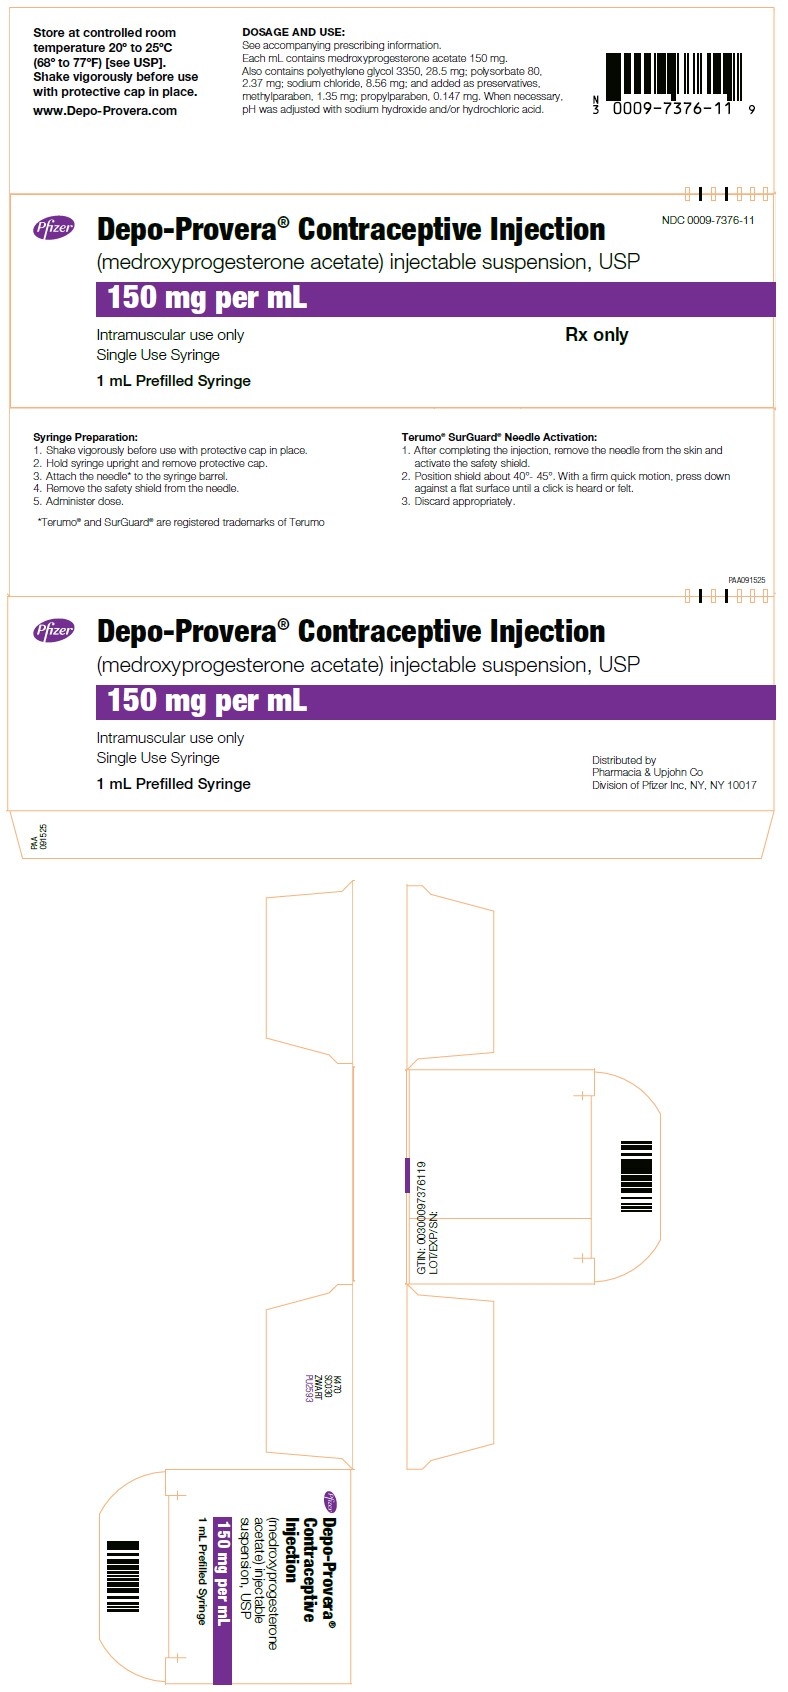 Ndc Code 0009-0746-30 - Medroxyprogesterone Acetate  Ndc Code Depo Provera 2020